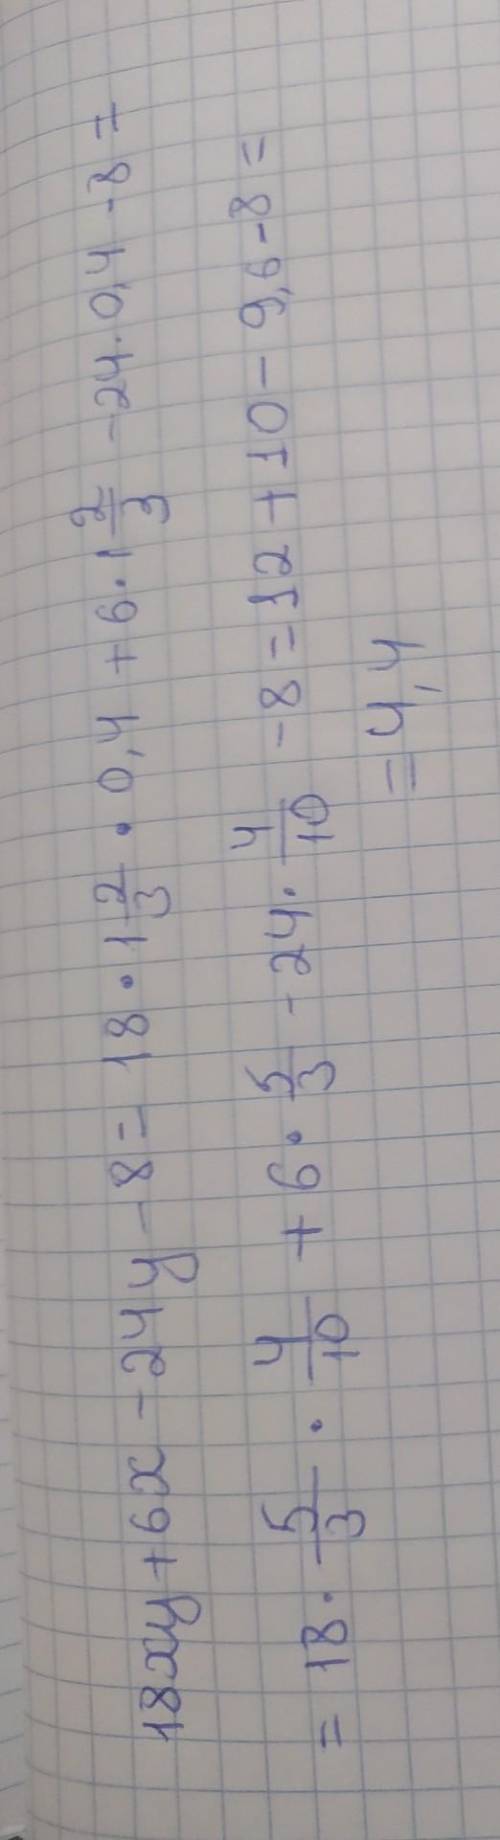 18ху+6х-24у-8 , если х=1 2/3 ; у=0,4 решите